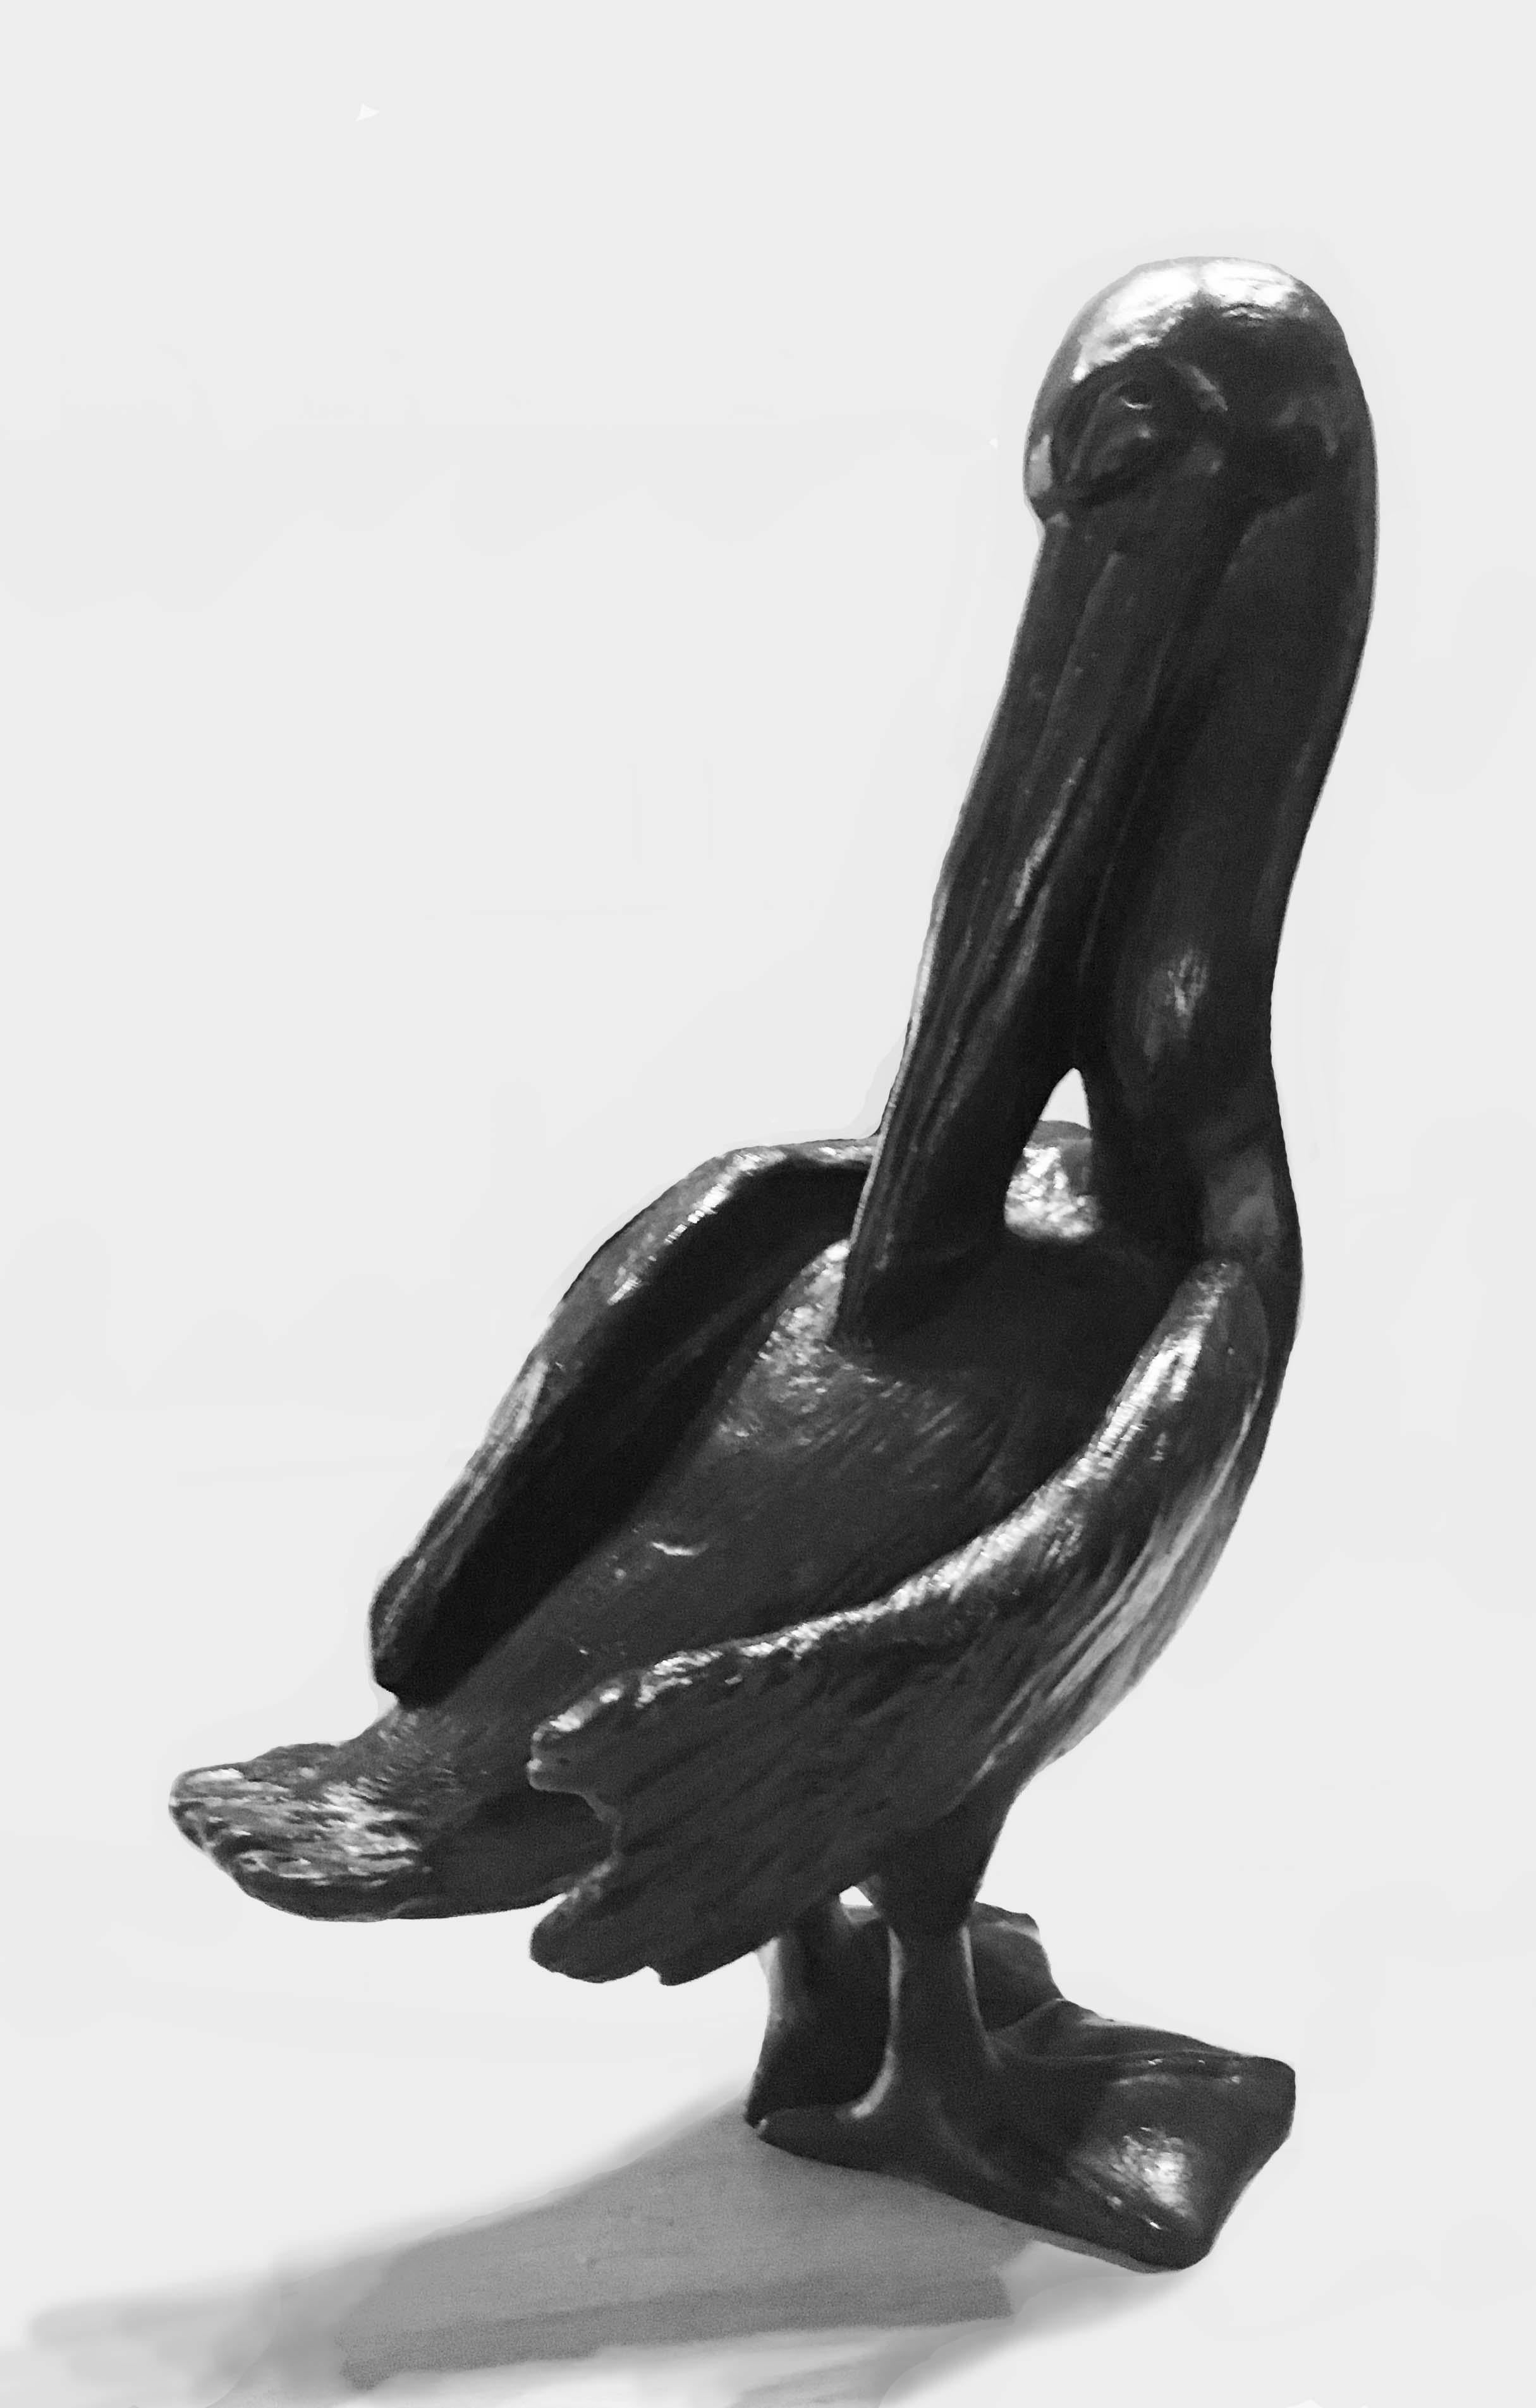 Pélican  - Sculpture by Jorge Borras